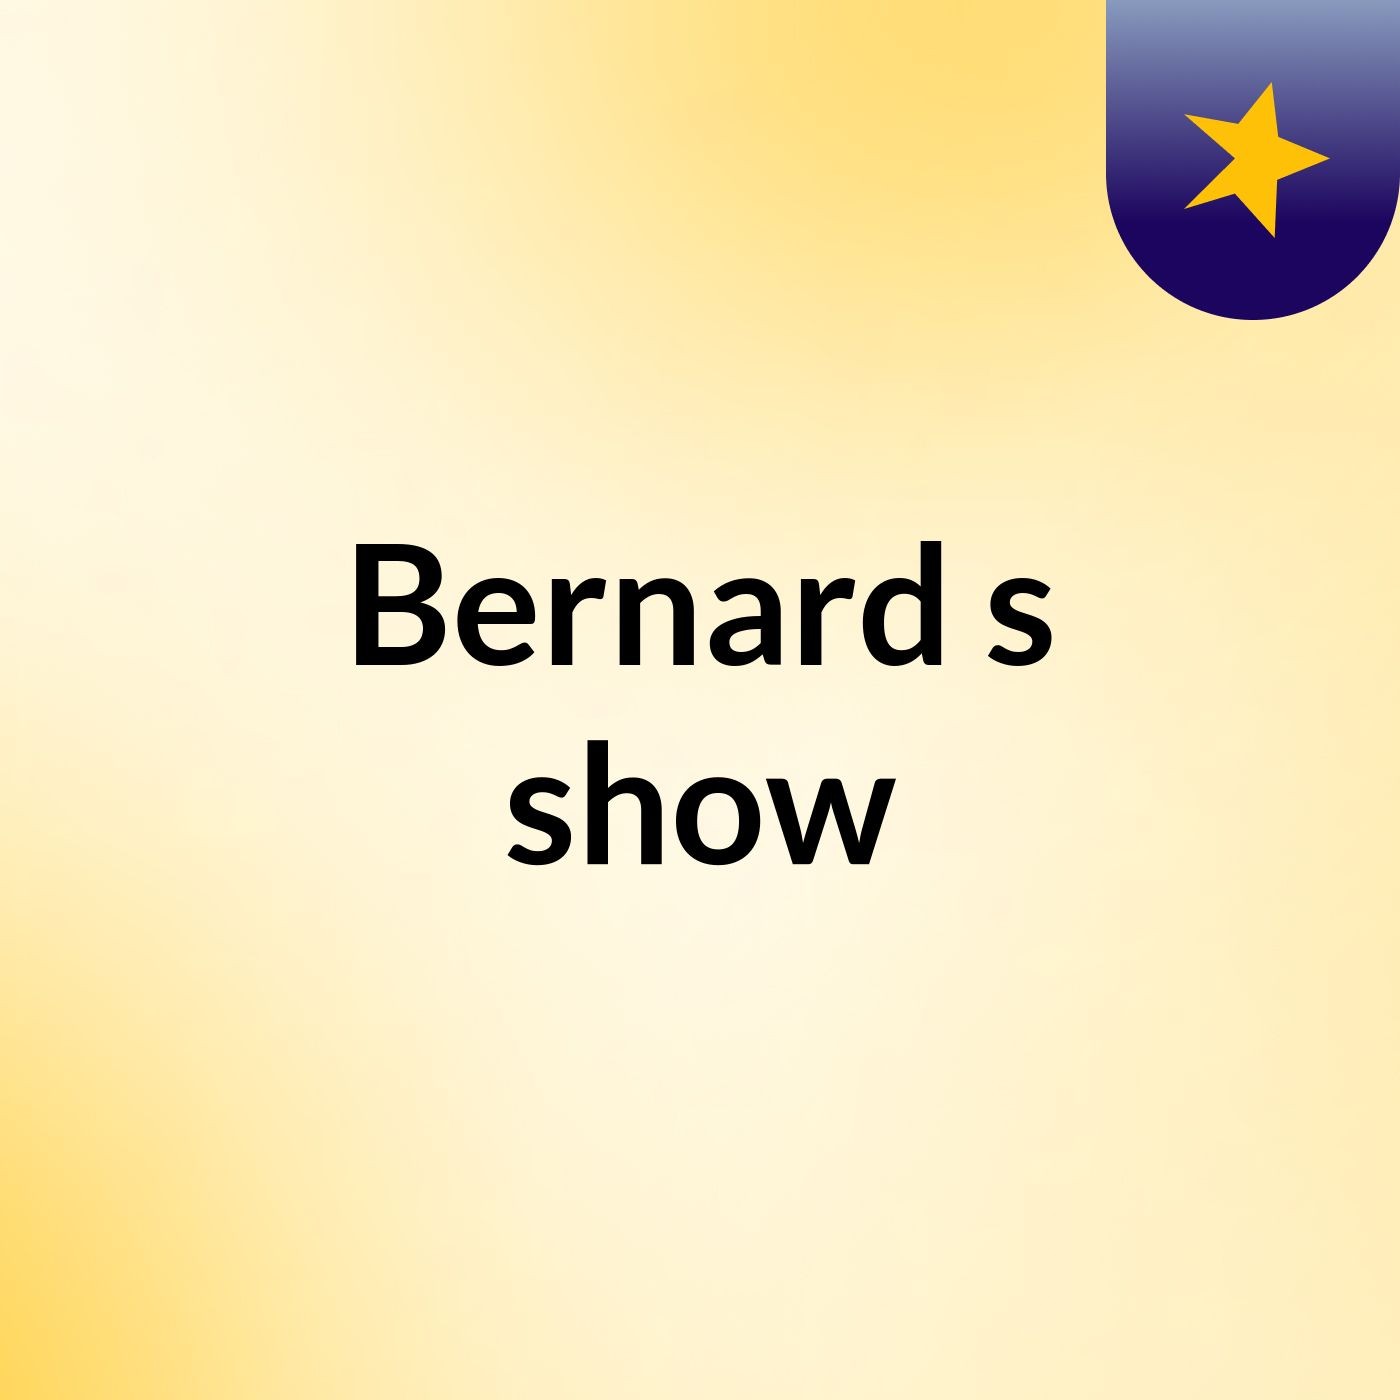 Bernard's show